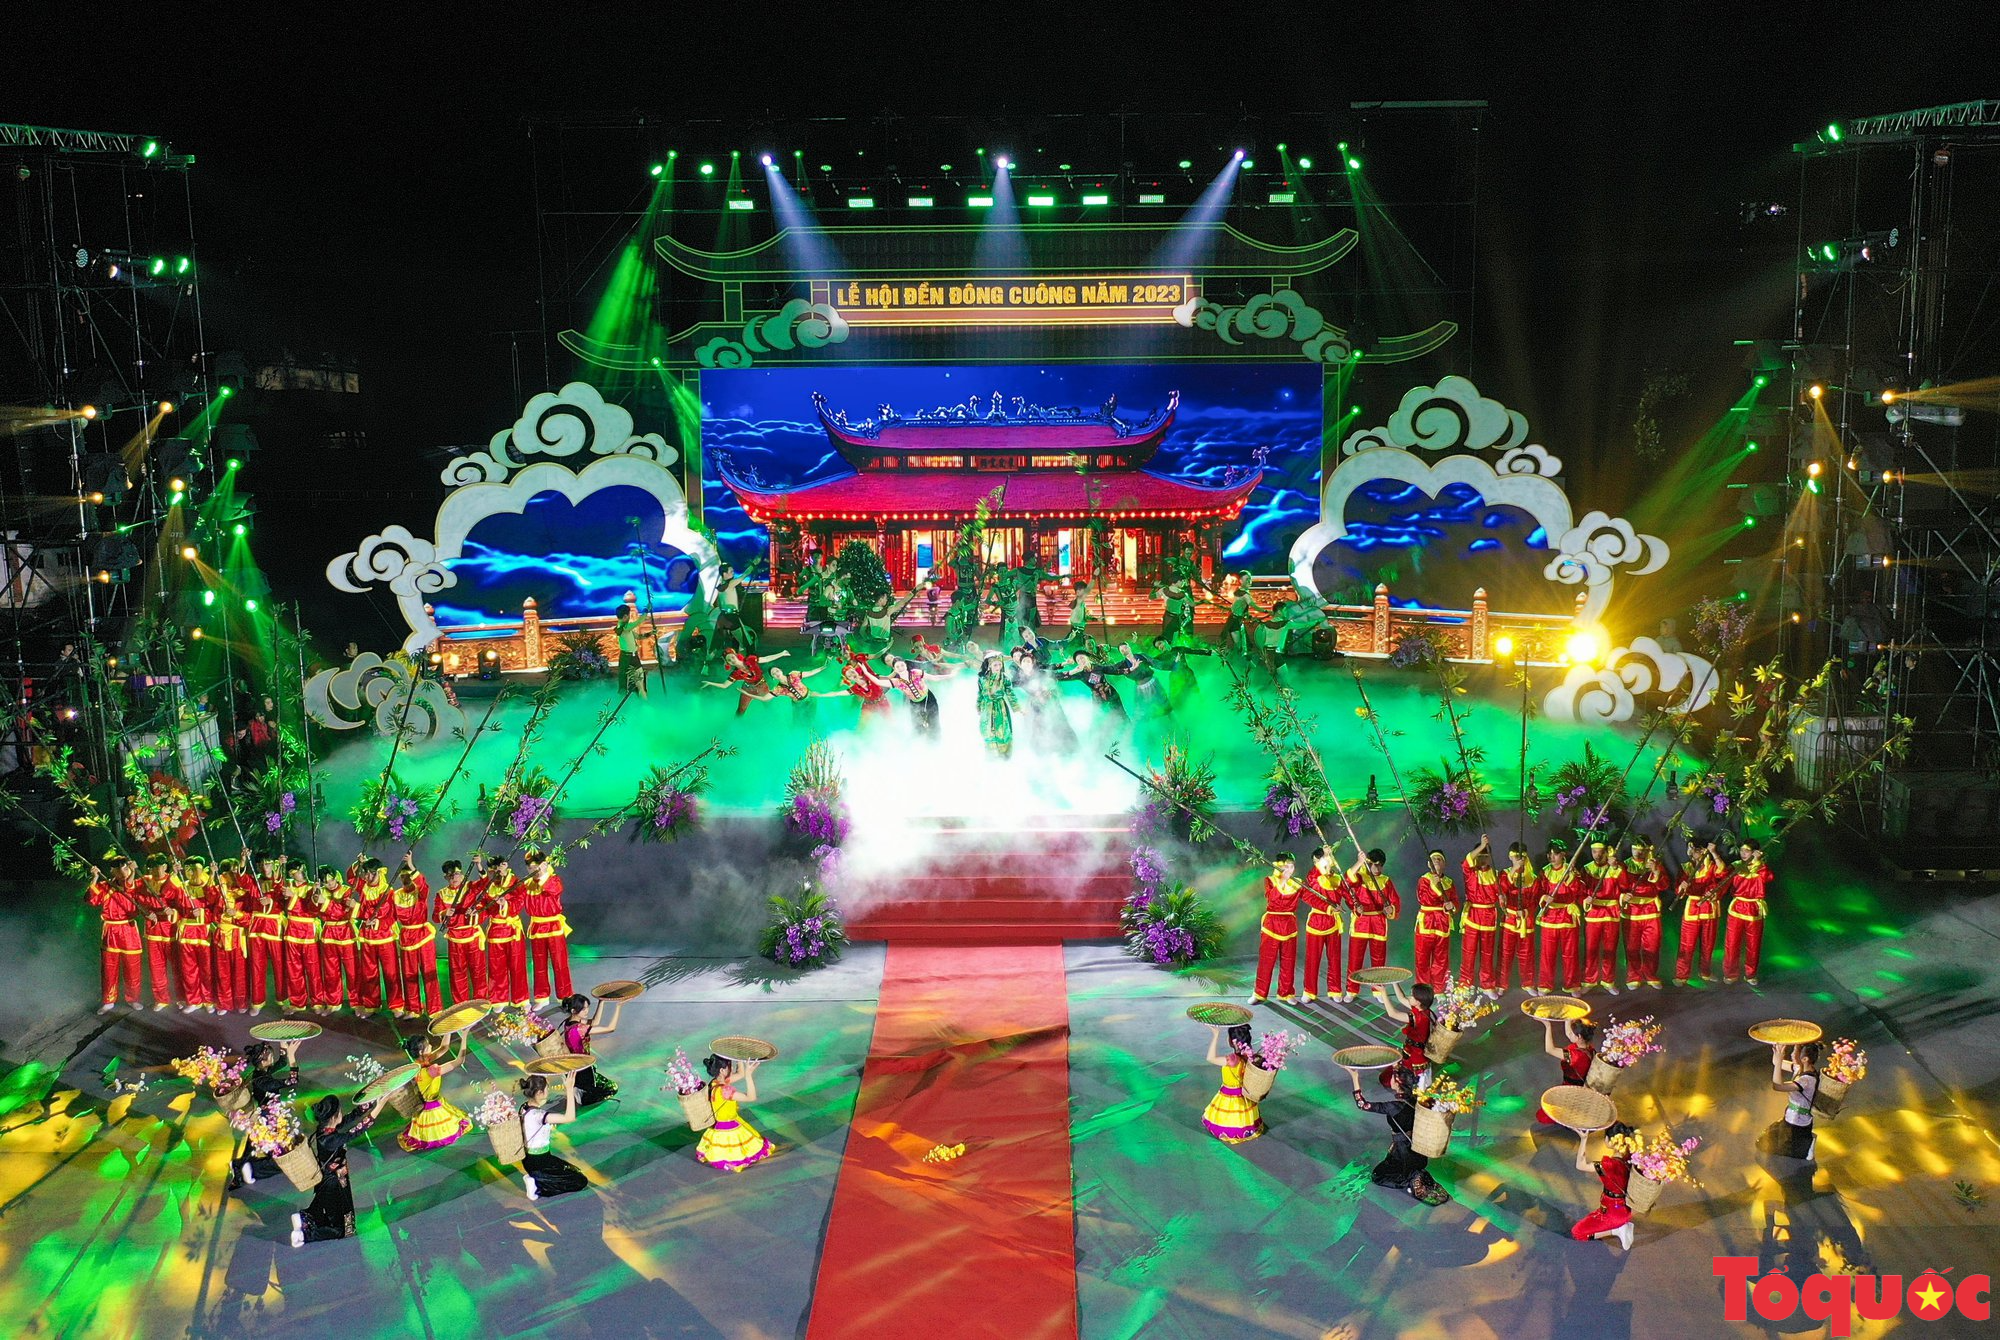 Lễ hội đền Đông Cuông, Yên Bái  là di sản văn hóa phi vật thể cấp Quốc gia - Ảnh 4.